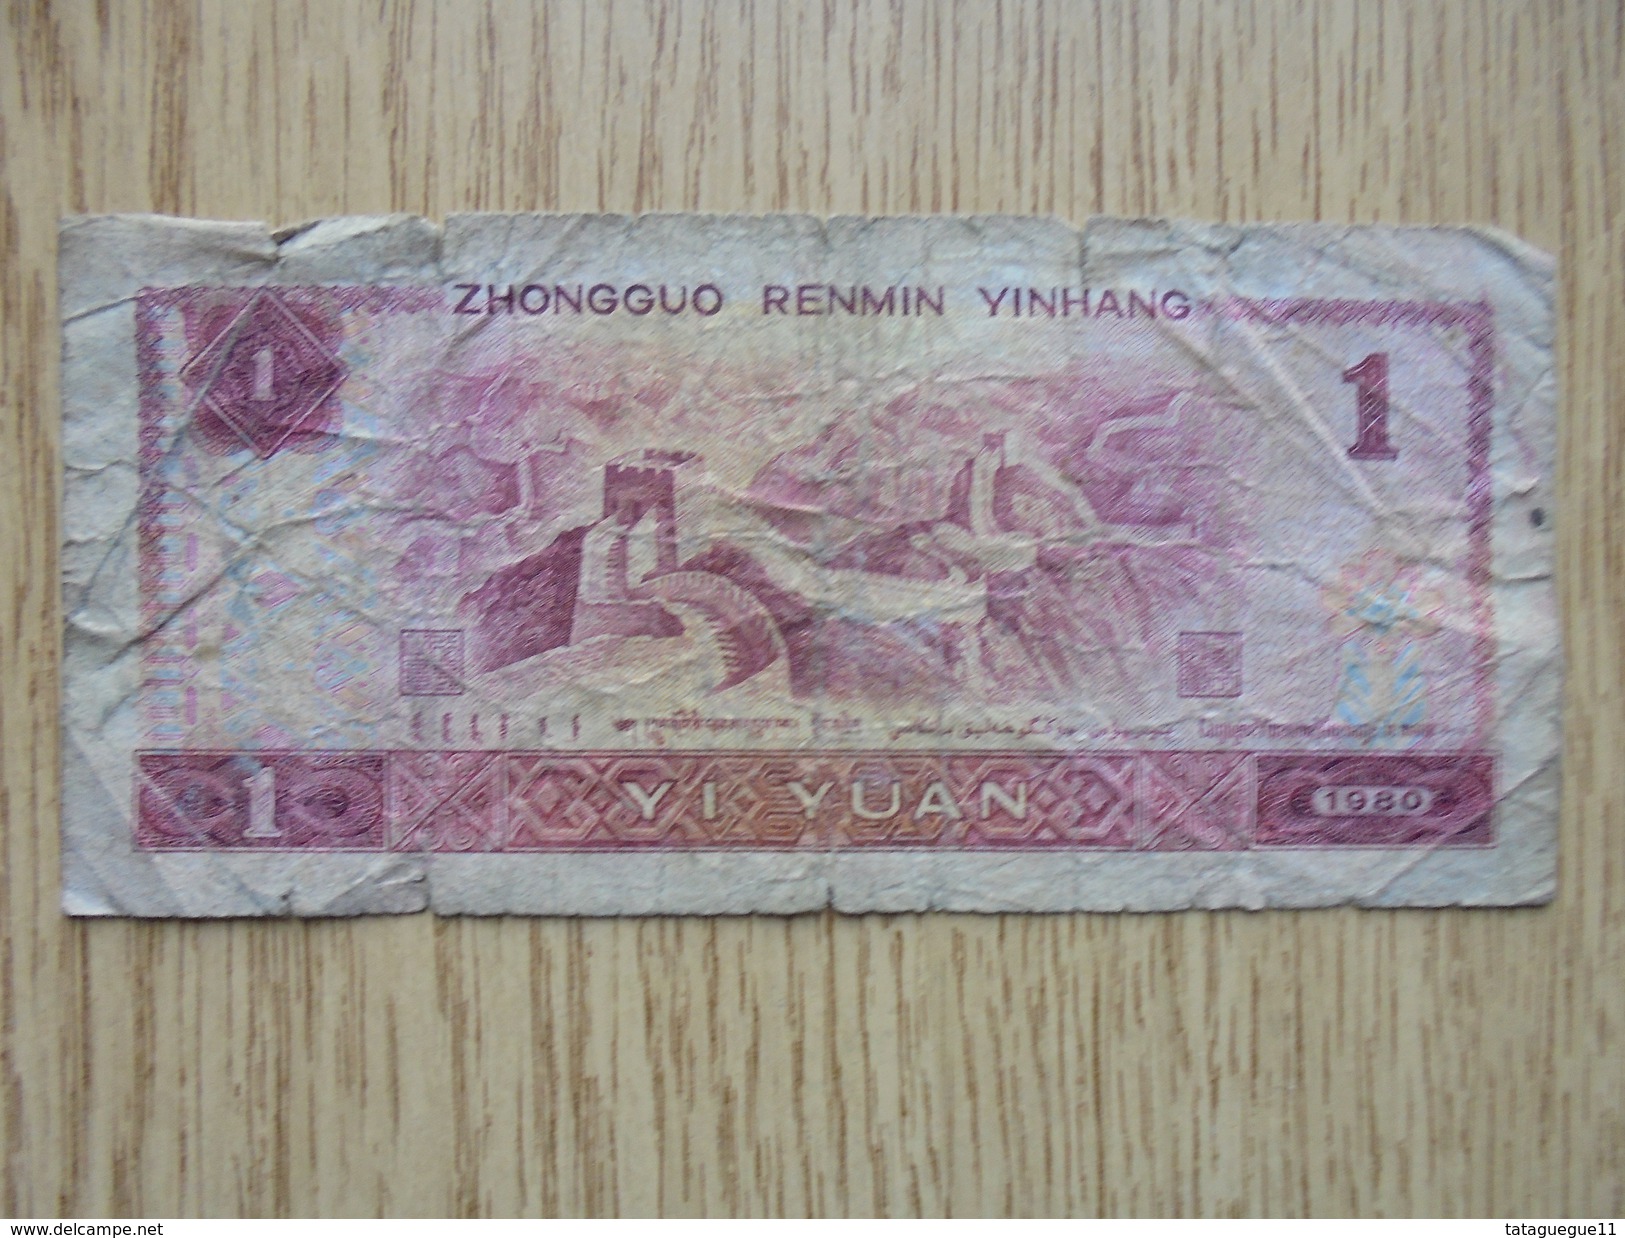 Ancien - Billet De Banque - ZHONGGUO RENMIN YINHANG 1 YI YUAN - 1980 - Andere - Azië